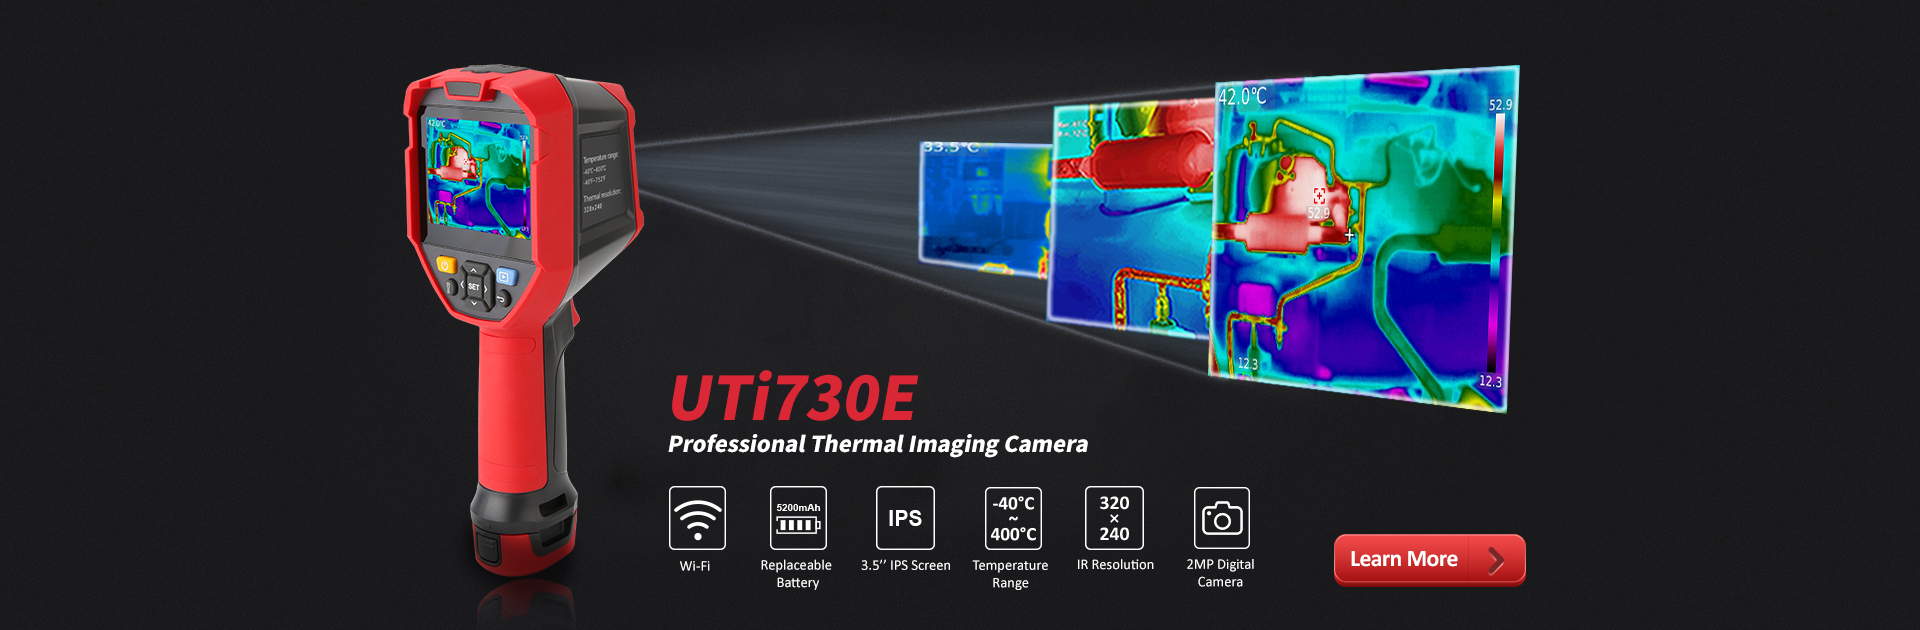 UTi730E - UNI-T Thermal Imaging Thermal Cameras,Thermal Monoculars